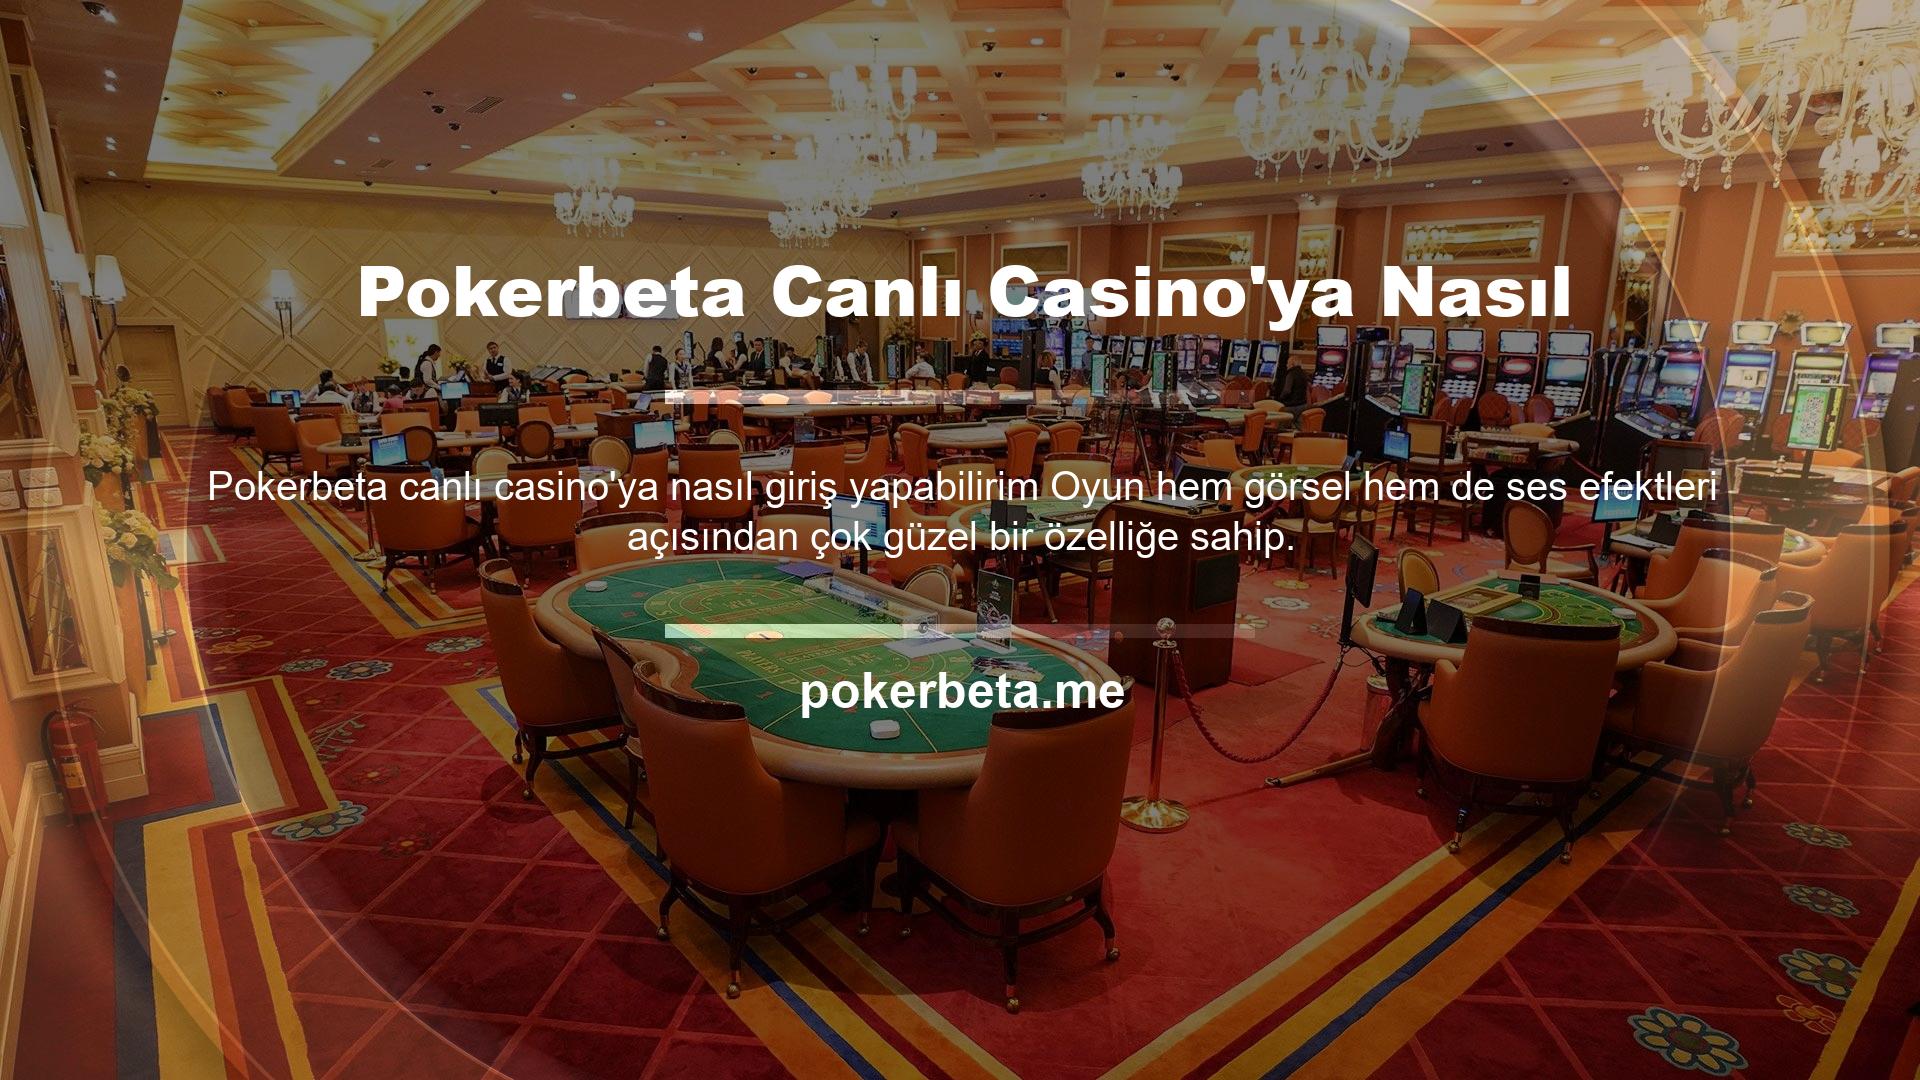 Pokerbeta sitesinde yer alan tüm oyunlar casino tutkunlarının kaprislerini tatmin edebilecek düzeydedir